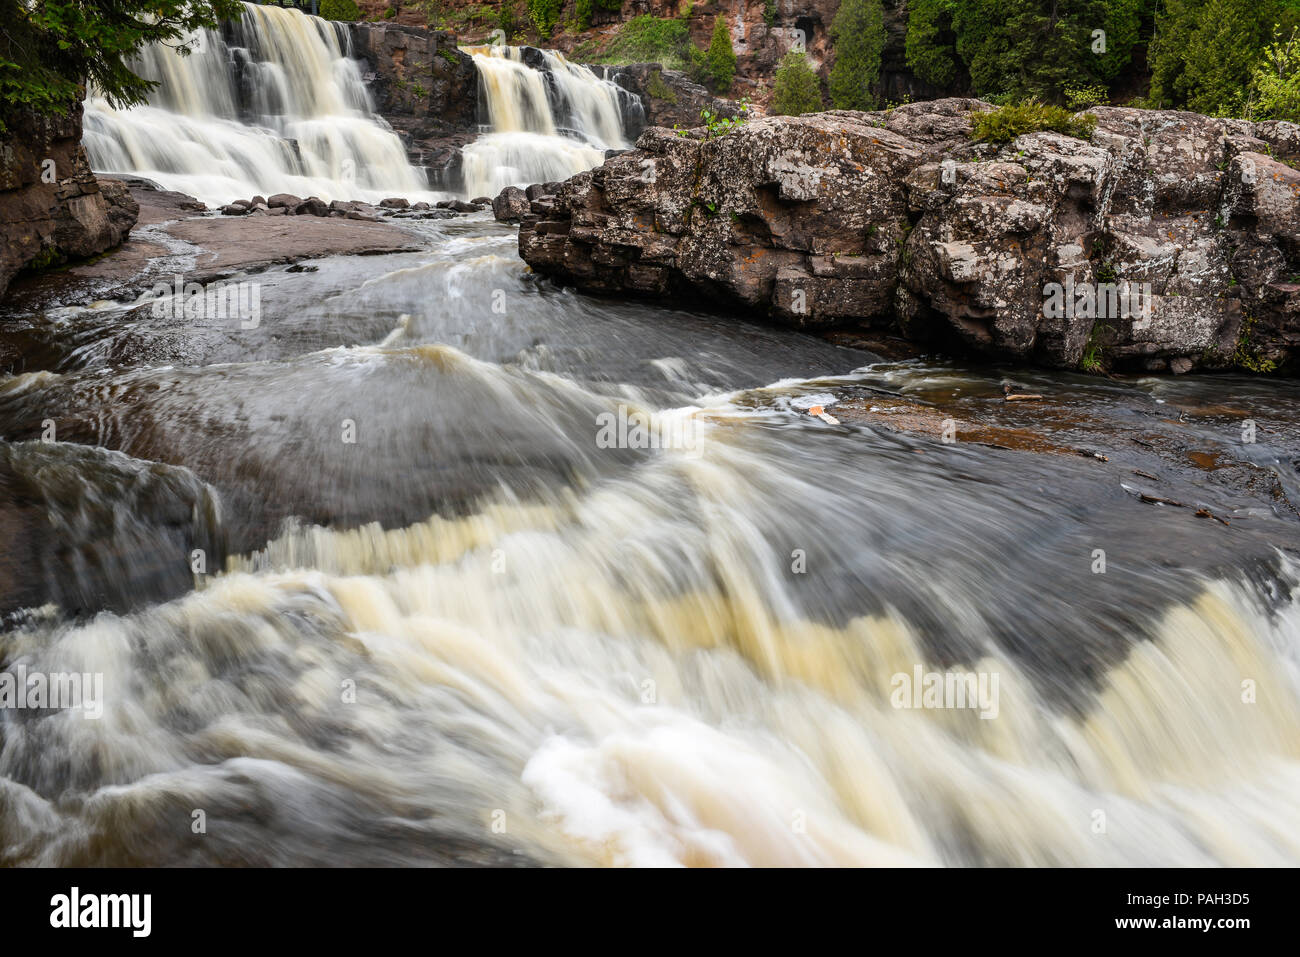 Stachelbeere Wasserfälle, Stachelbeere Falls State Park, MN, USA, durch die Bruce Montagne/Dembinsky Foto Assoc Stockfoto